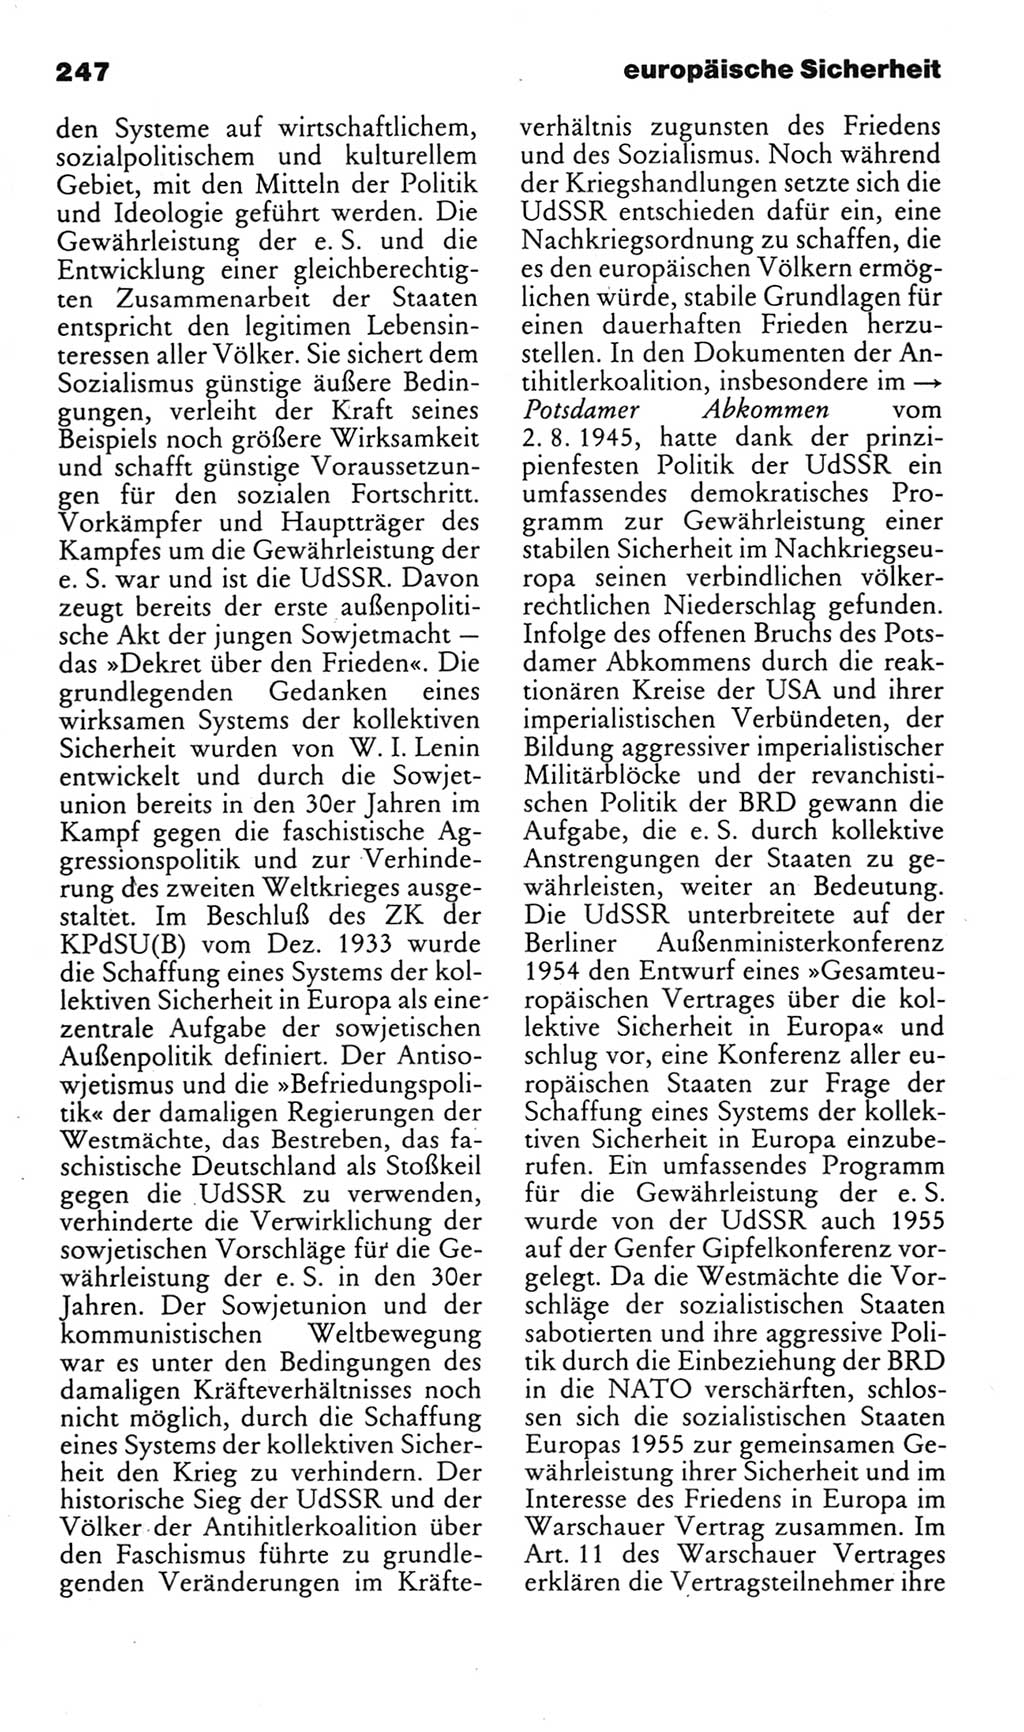 Kleines politisches Wörterbuch [Deutsche Demokratische Republik (DDR)] 1985, Seite 247 (Kl. pol. Wb. DDR 1985, S. 247)